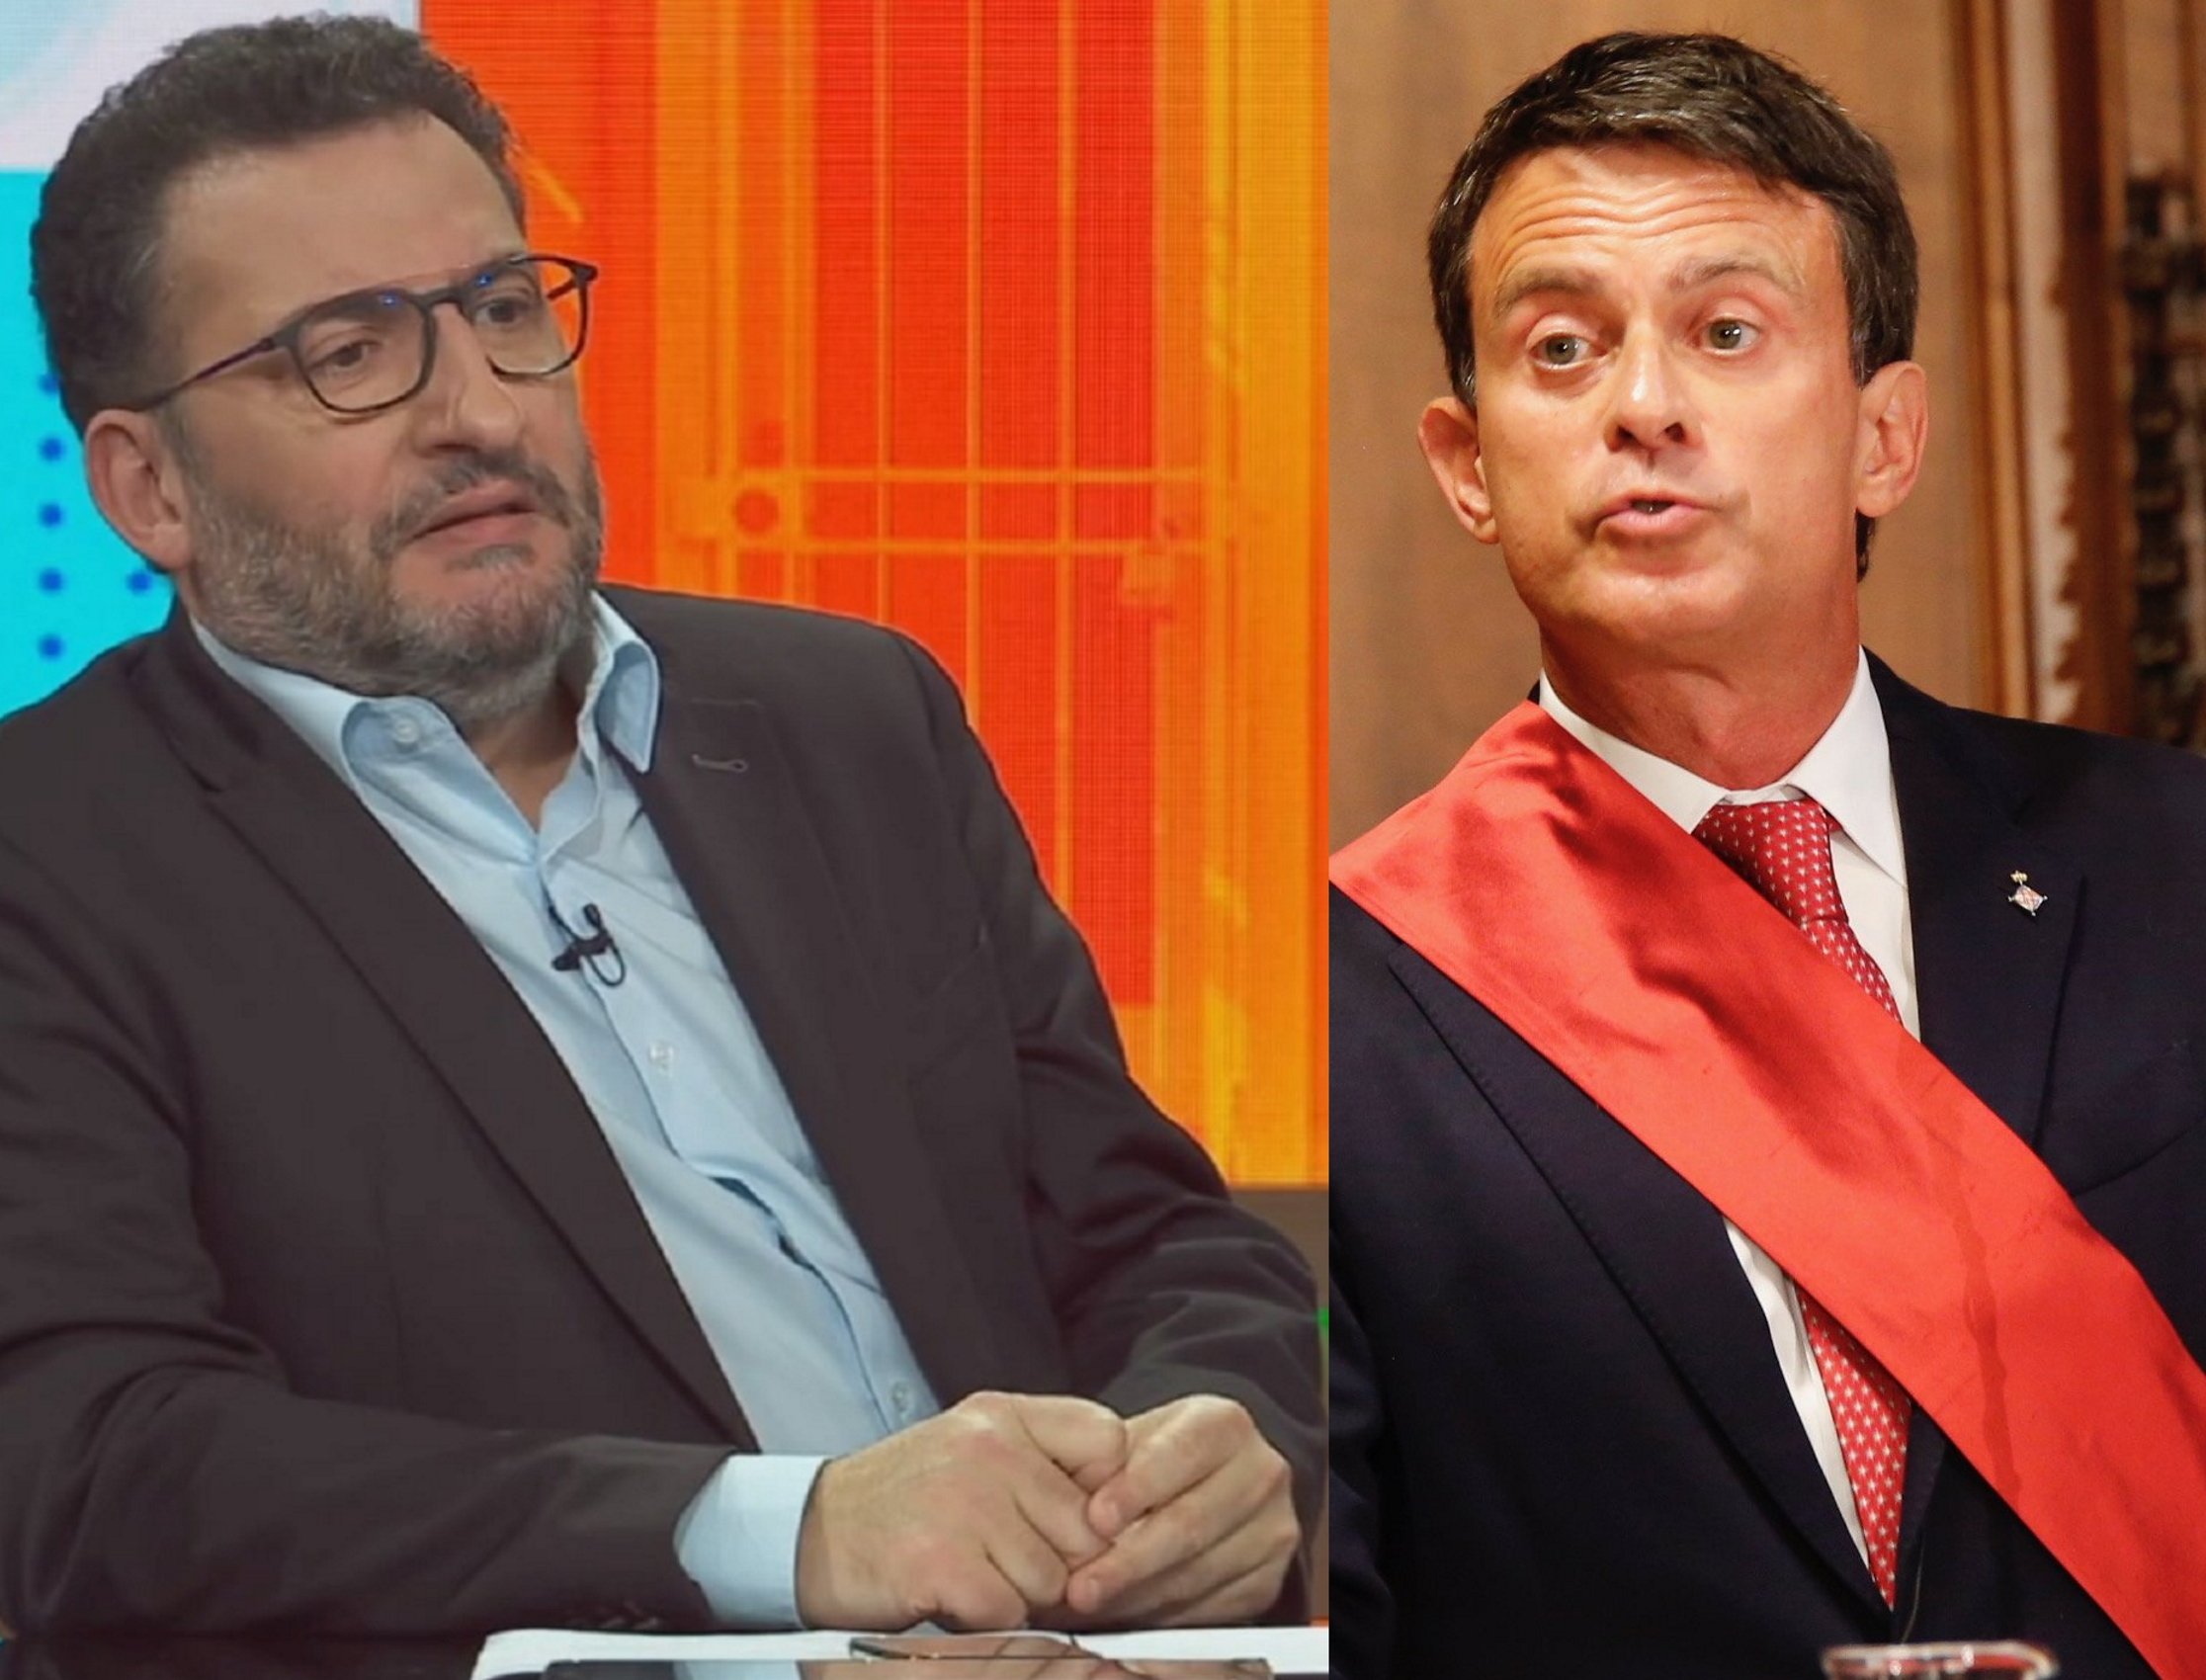 Toni Soler Manuel Valls TV3 Sergi Alcàzar